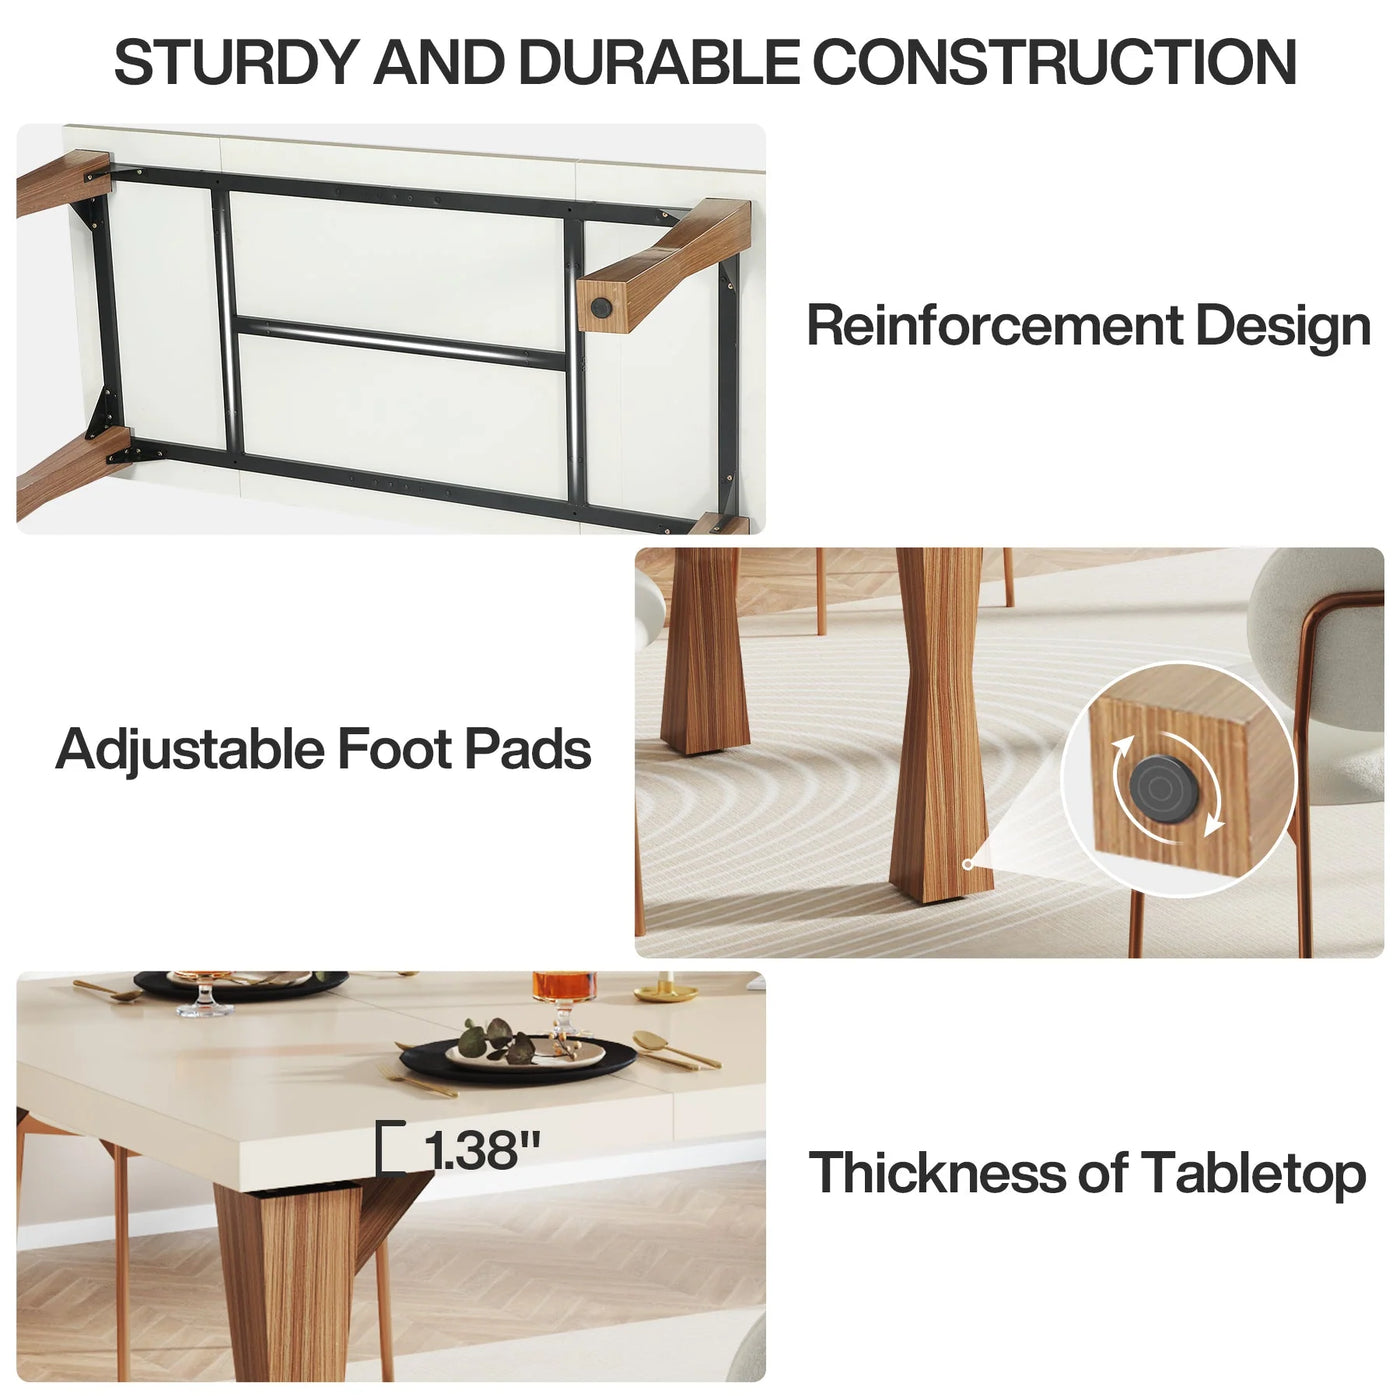 Mesa de comedor de madera Boldano | Mesa de cocina rectangular resistente, color blanco y marrón, para 6-8 personas